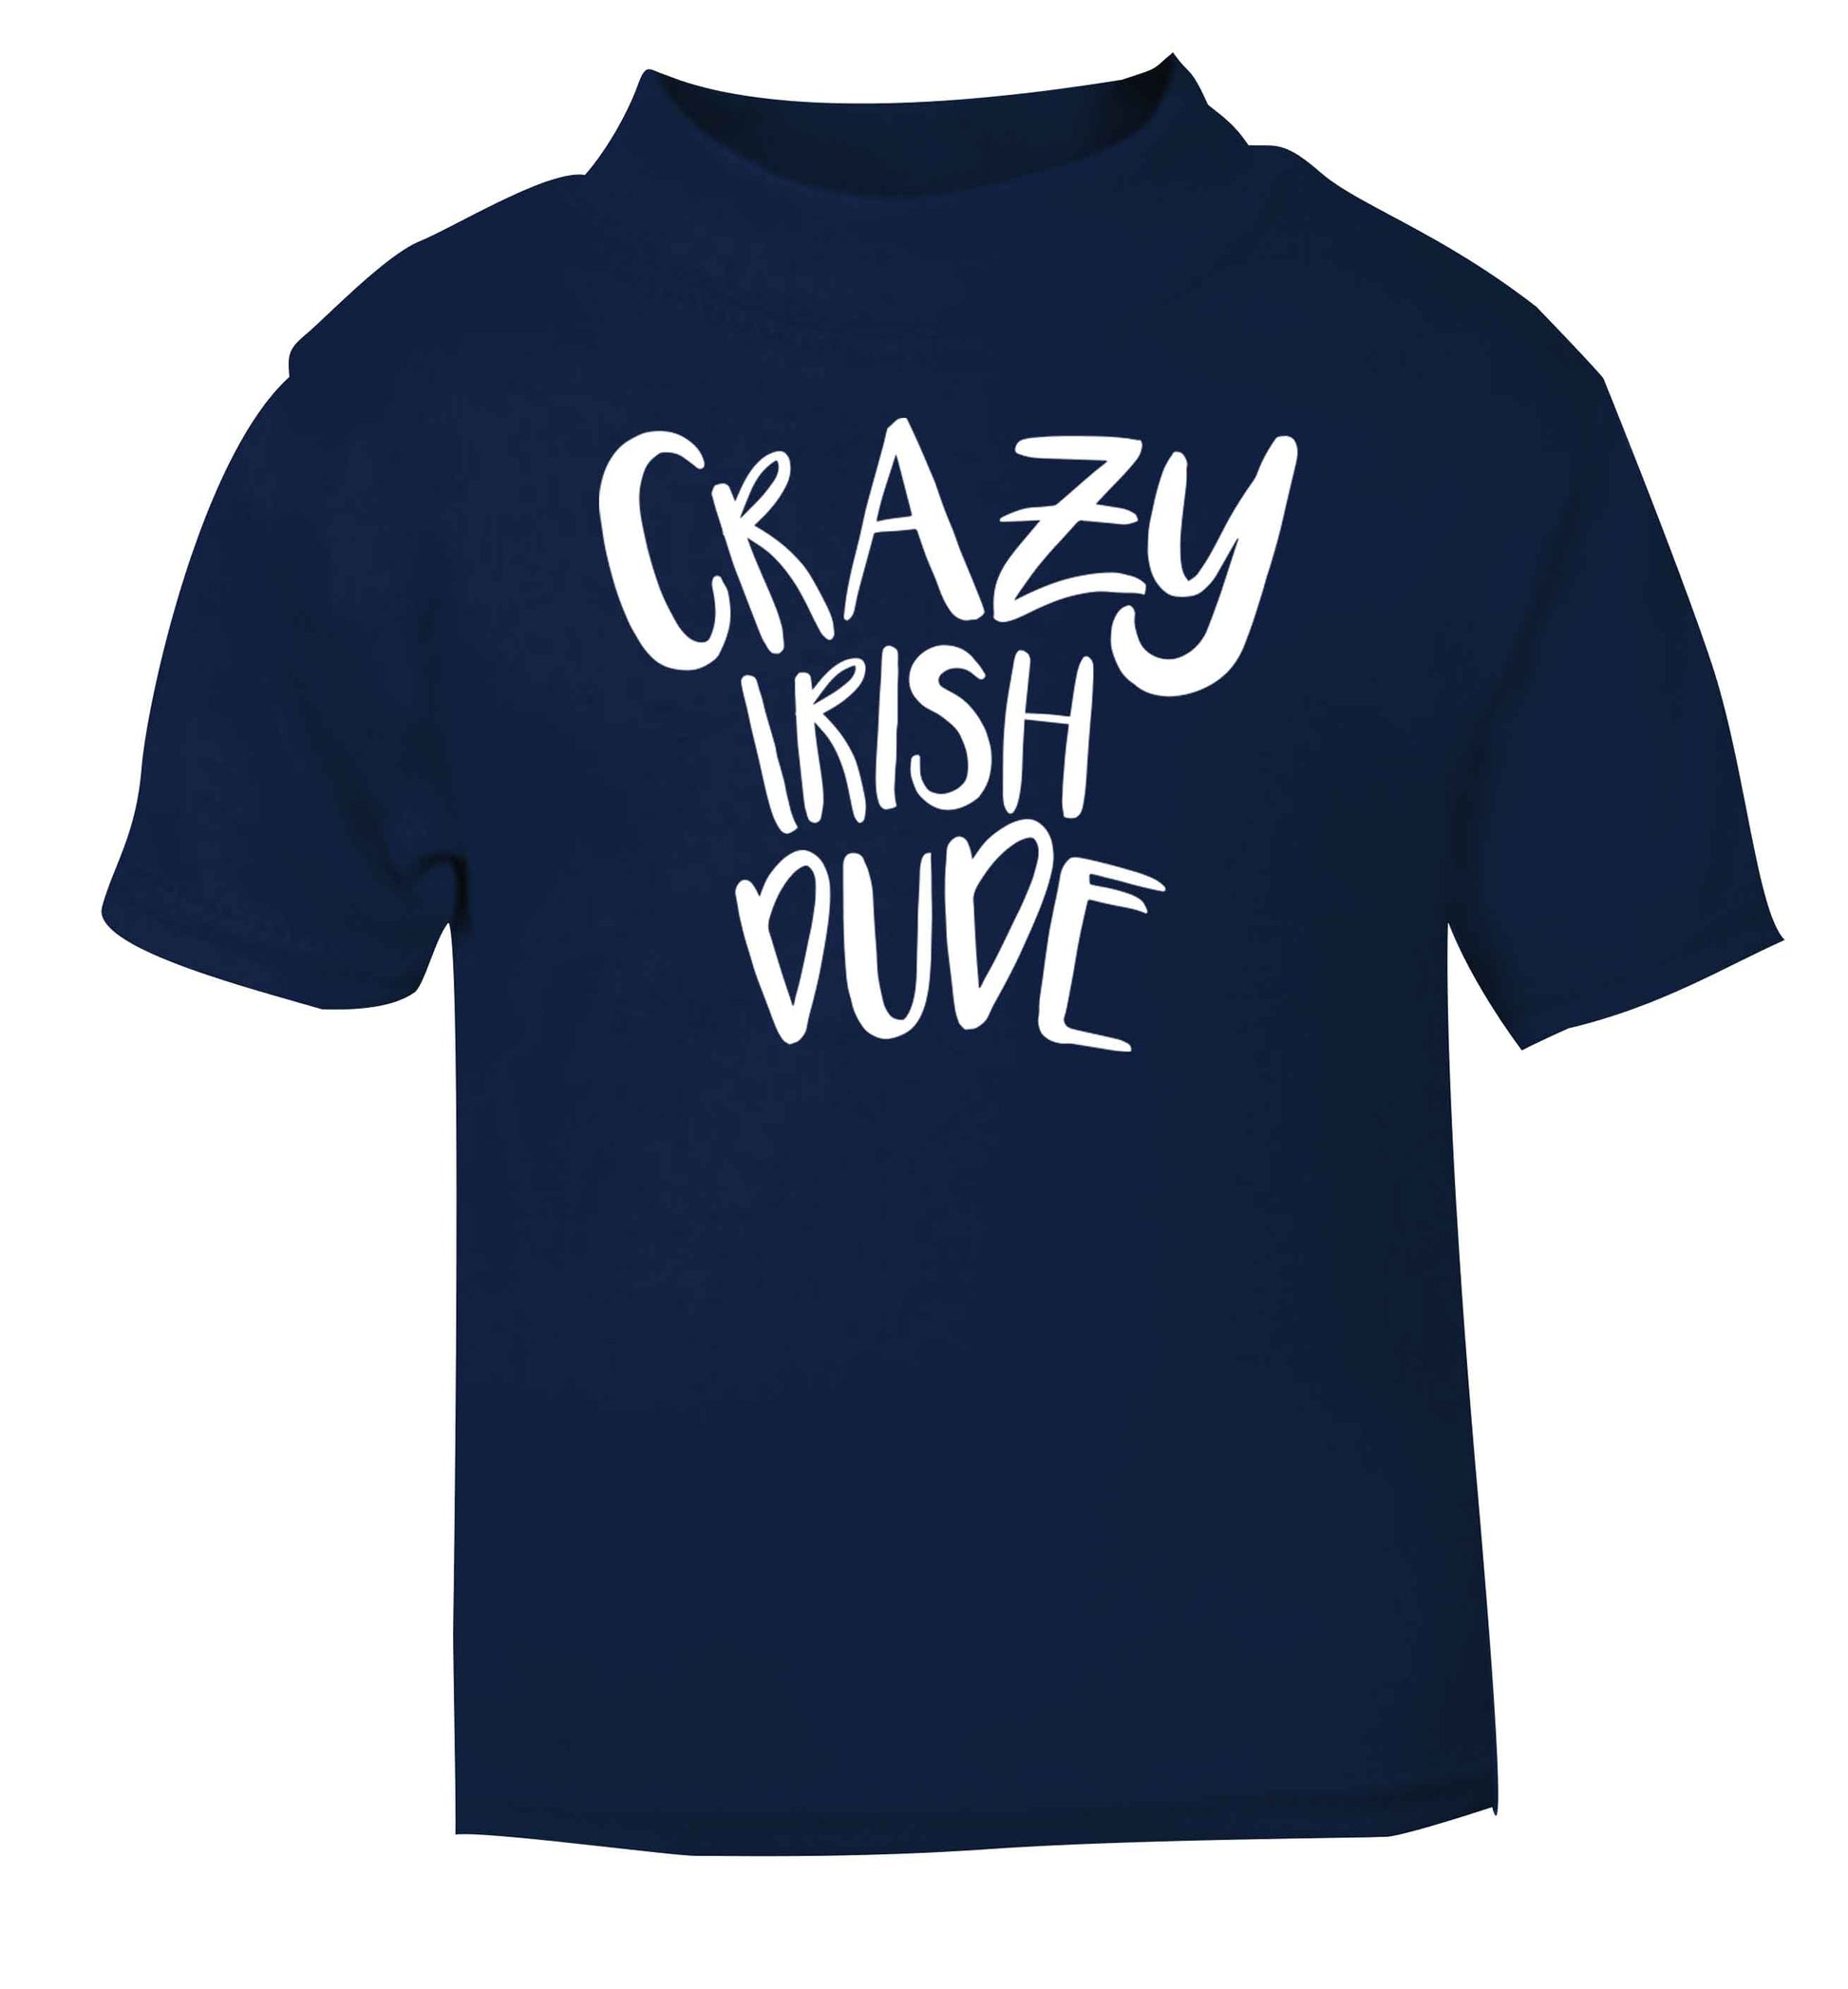 Crazy Irish dude navy baby toddler Tshirt 2 Years